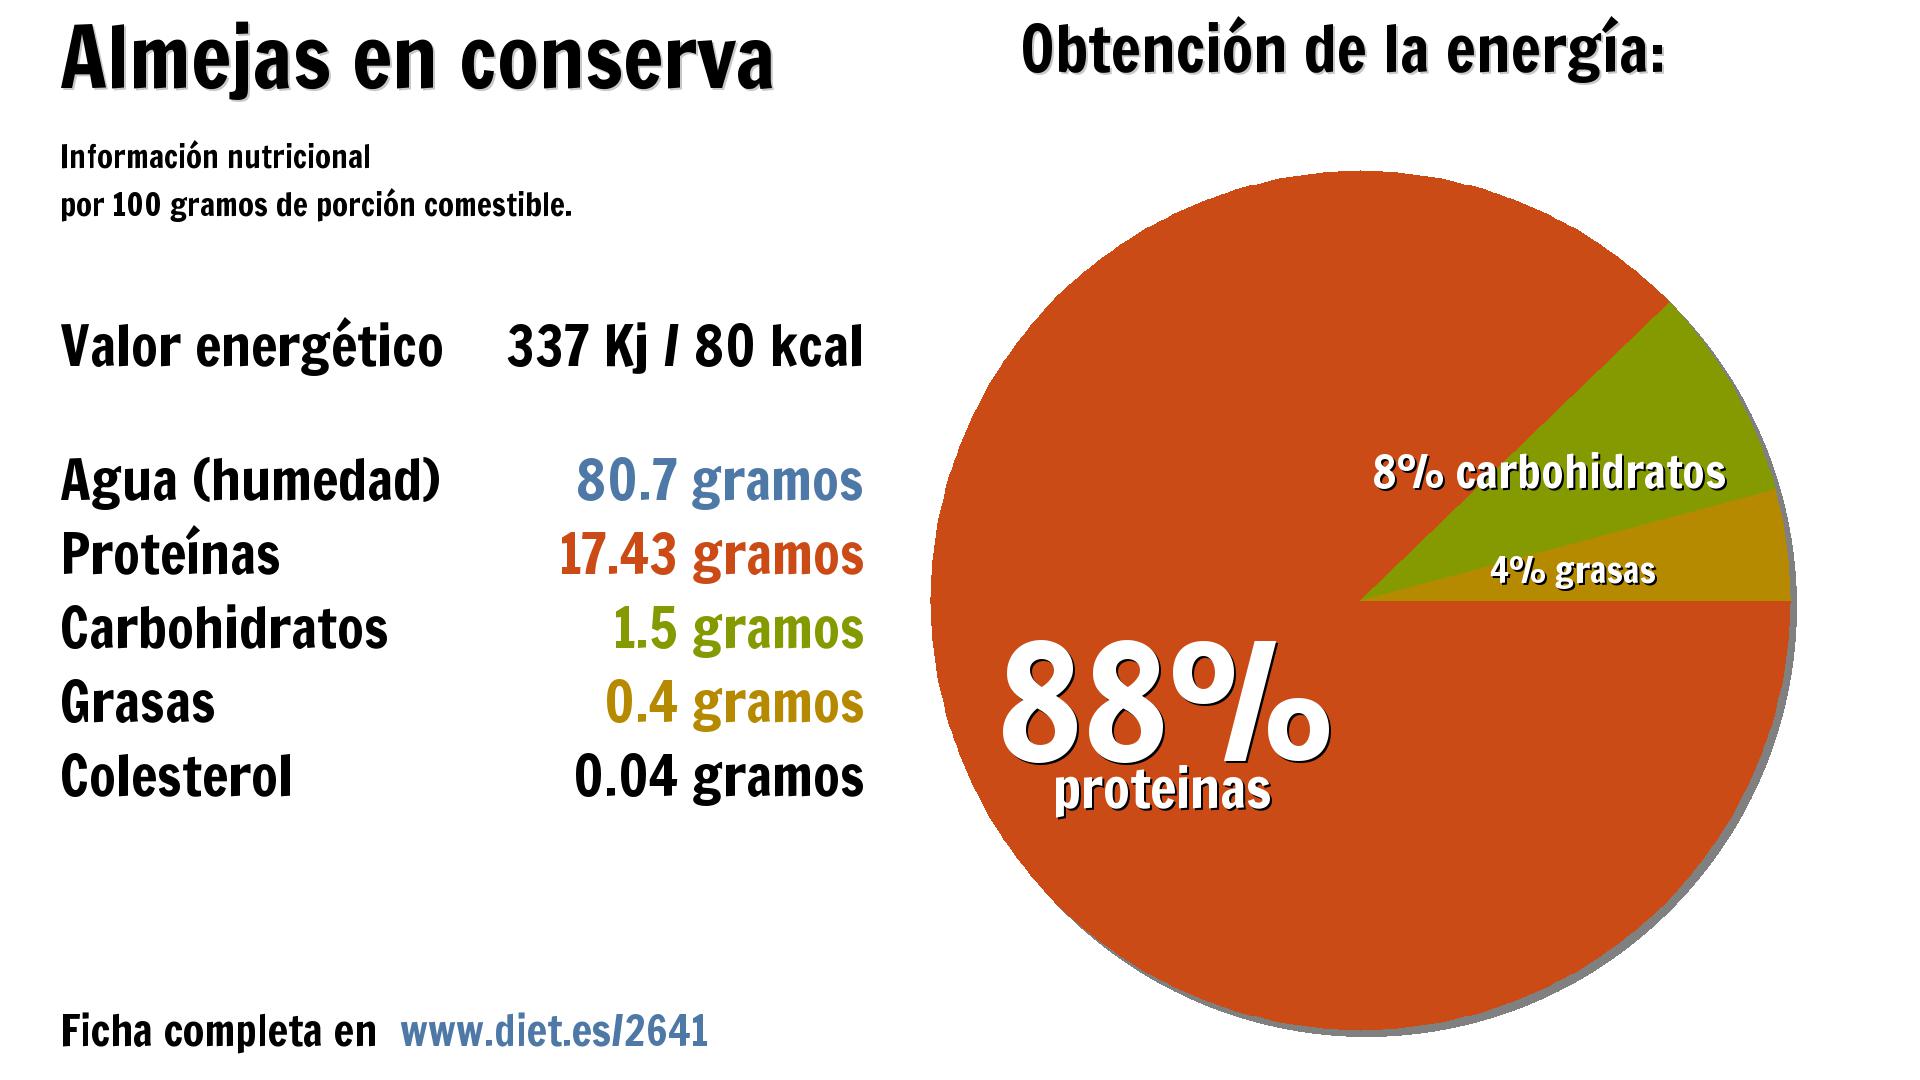 Almejas en conserva: energía 337 Kj, agua 81 g., proteínas 17 g. y carbohidratos 2 g.